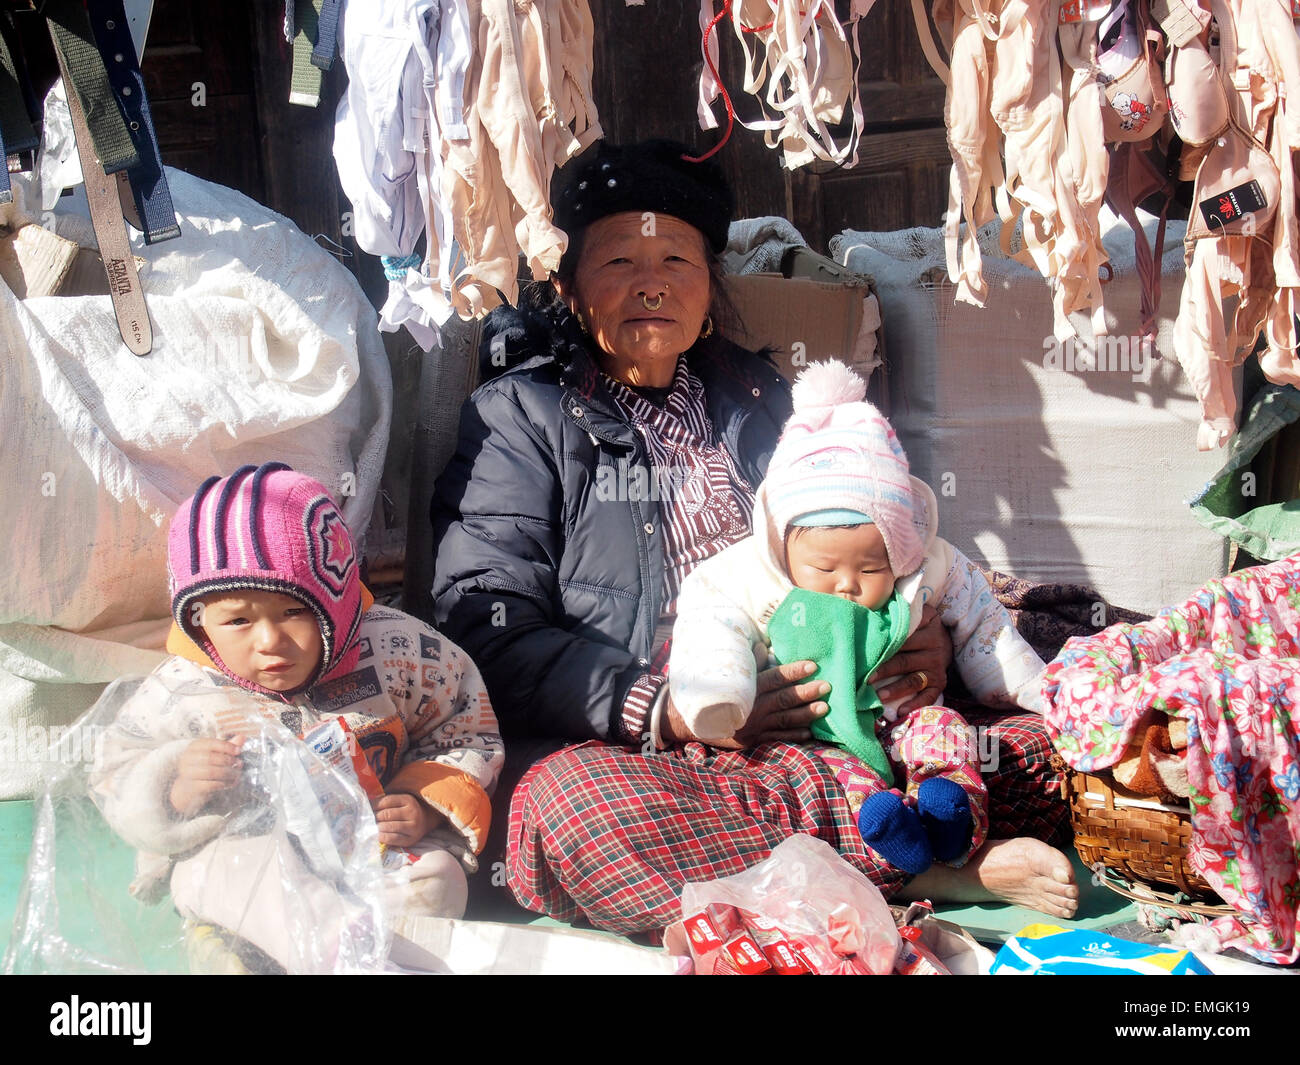 Négociant sur le marché népalais avec enfants Lukla au Népal Asie Banque D'Images